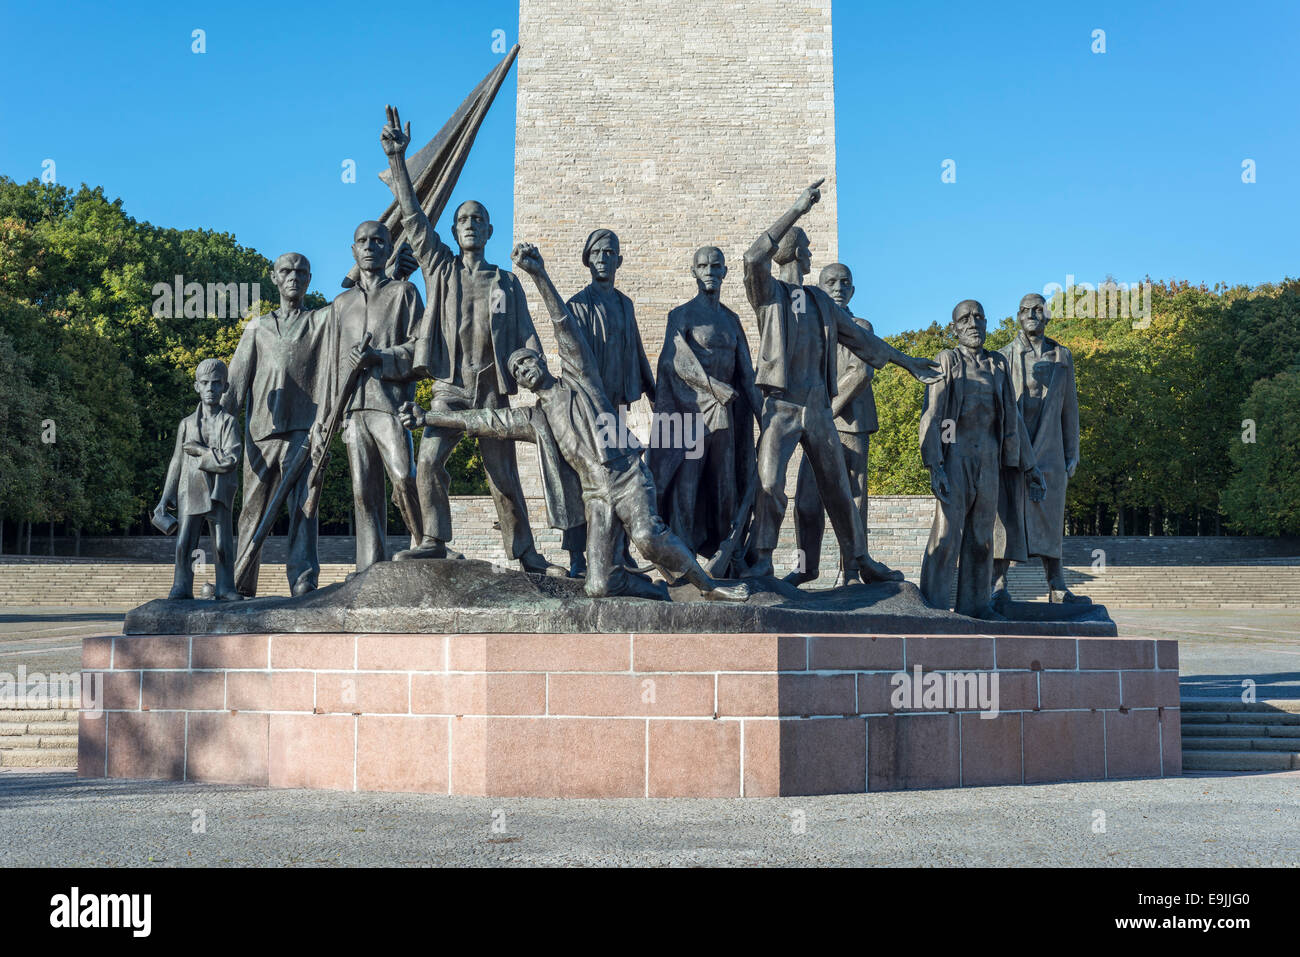 Mémorial de Buchenwald, bronze figure group par Fritz Cremer, Ettersberg, Weimar, Thuringe, Allemagne Banque D'Images